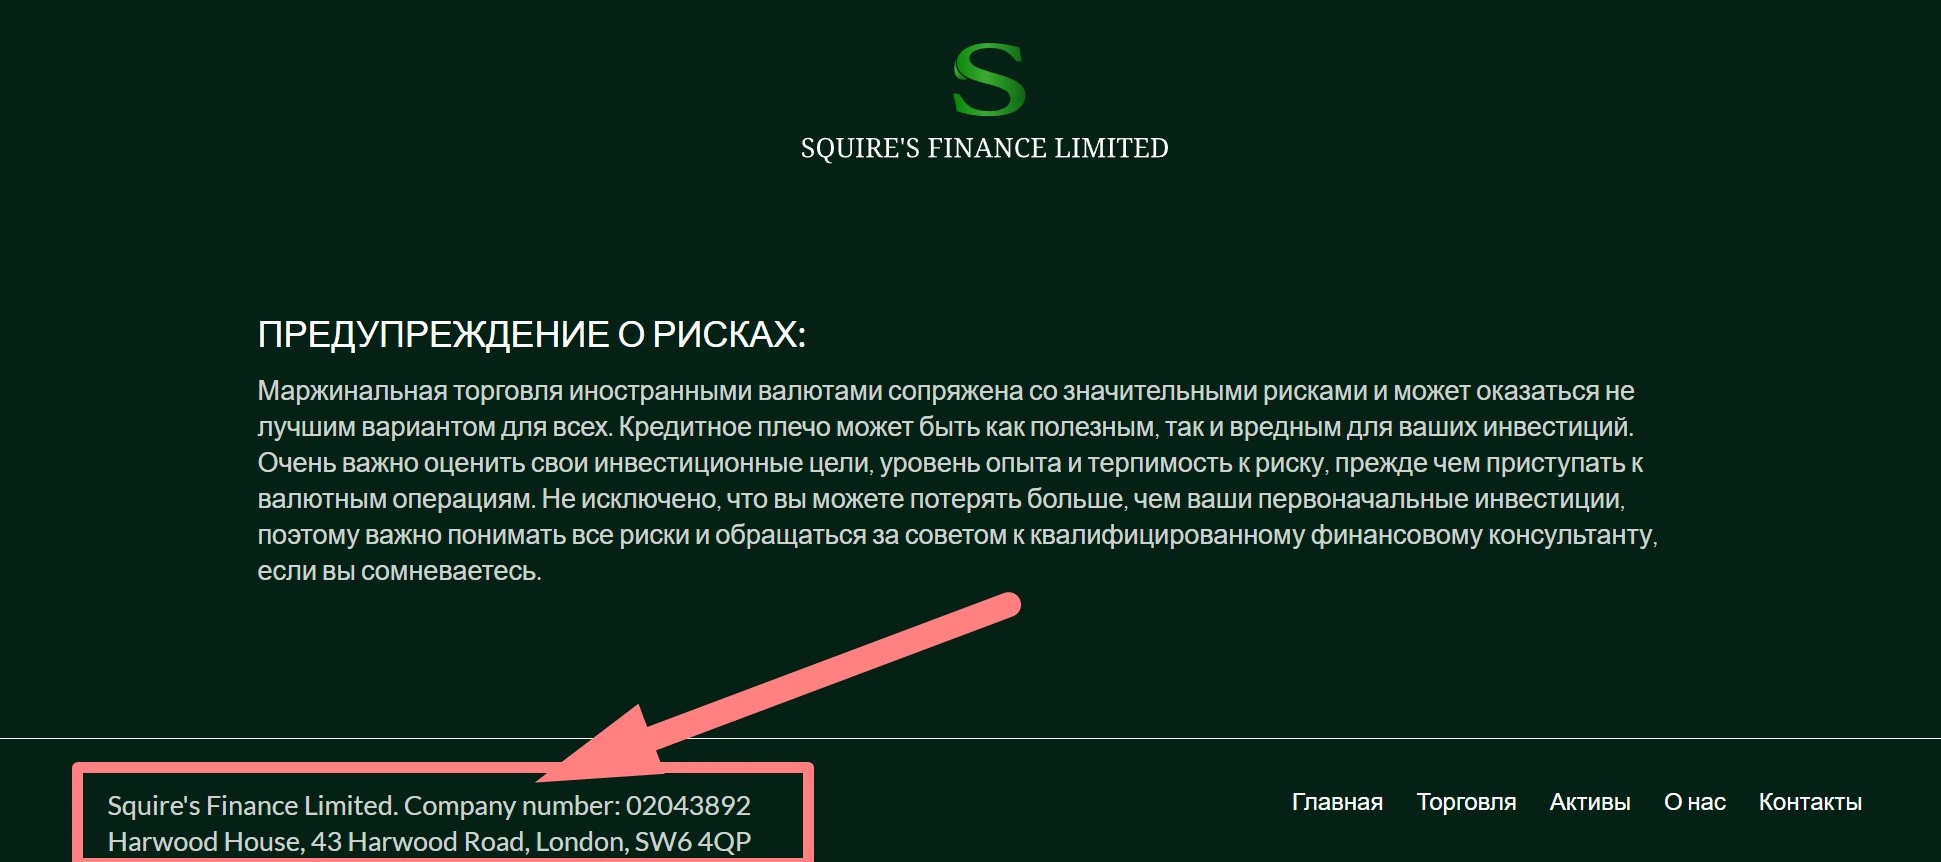 Информация в футере сайта Squire's Finance Limited